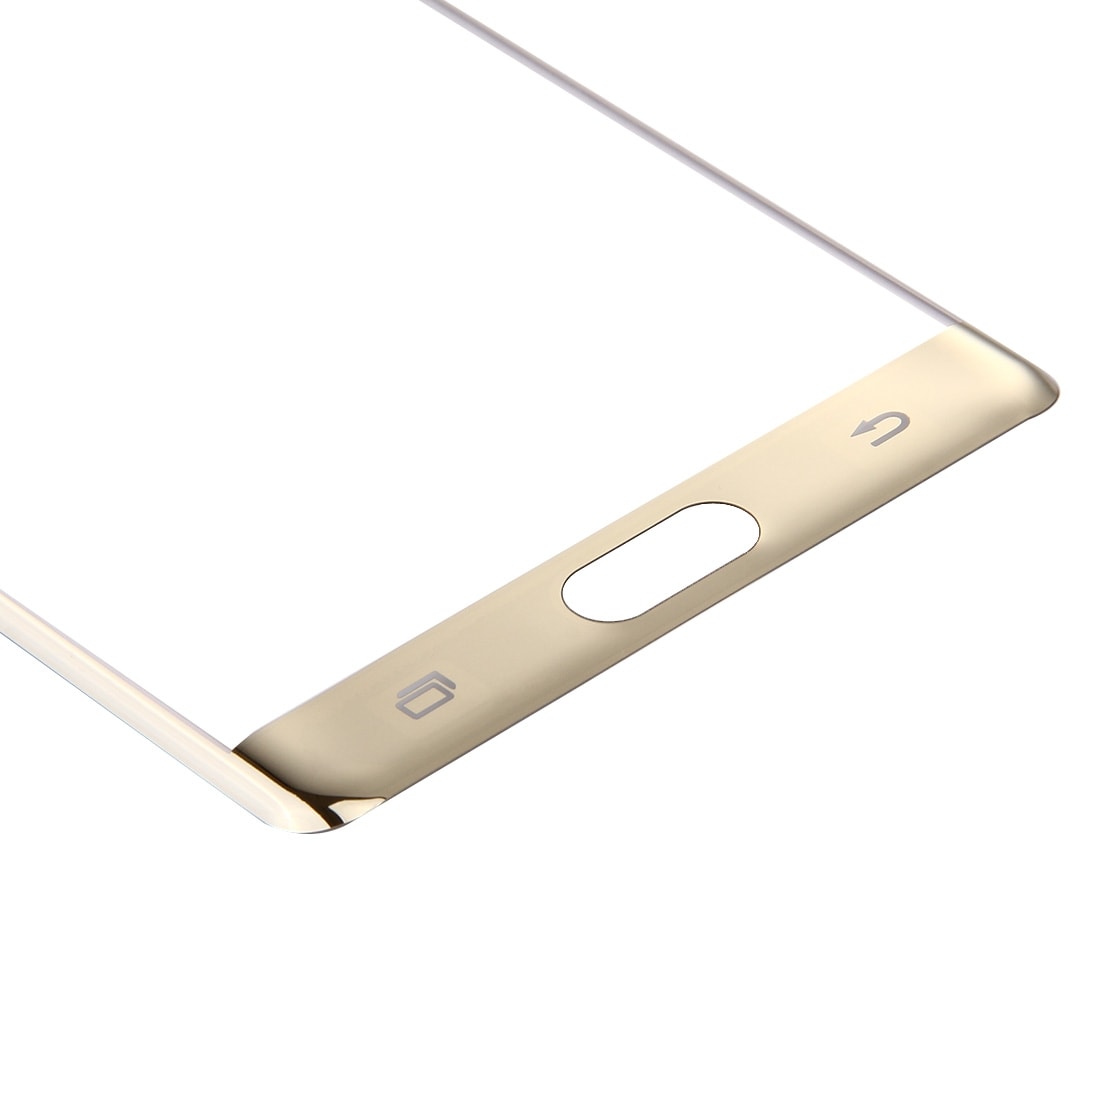 Buet Glasskåner Samsung Galaxy Note 7